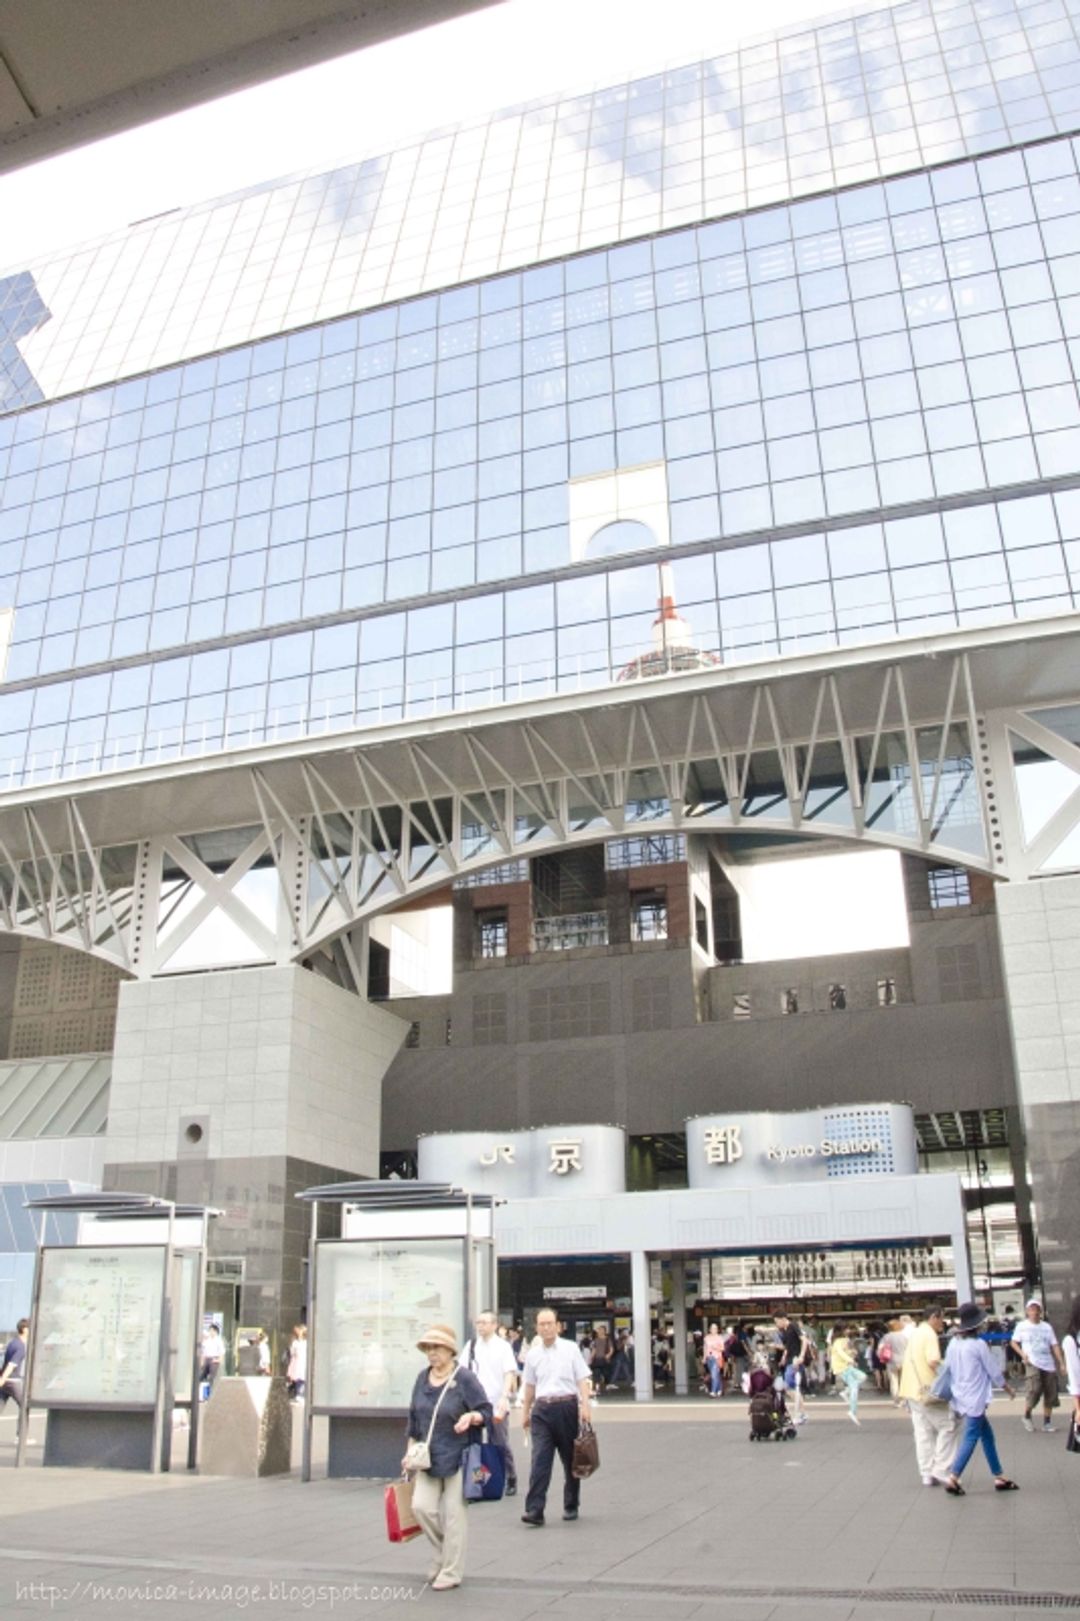 第一次帶長輩出國自助旅行 16夏 京都 京都車站 日本 關西 旅行酒吧